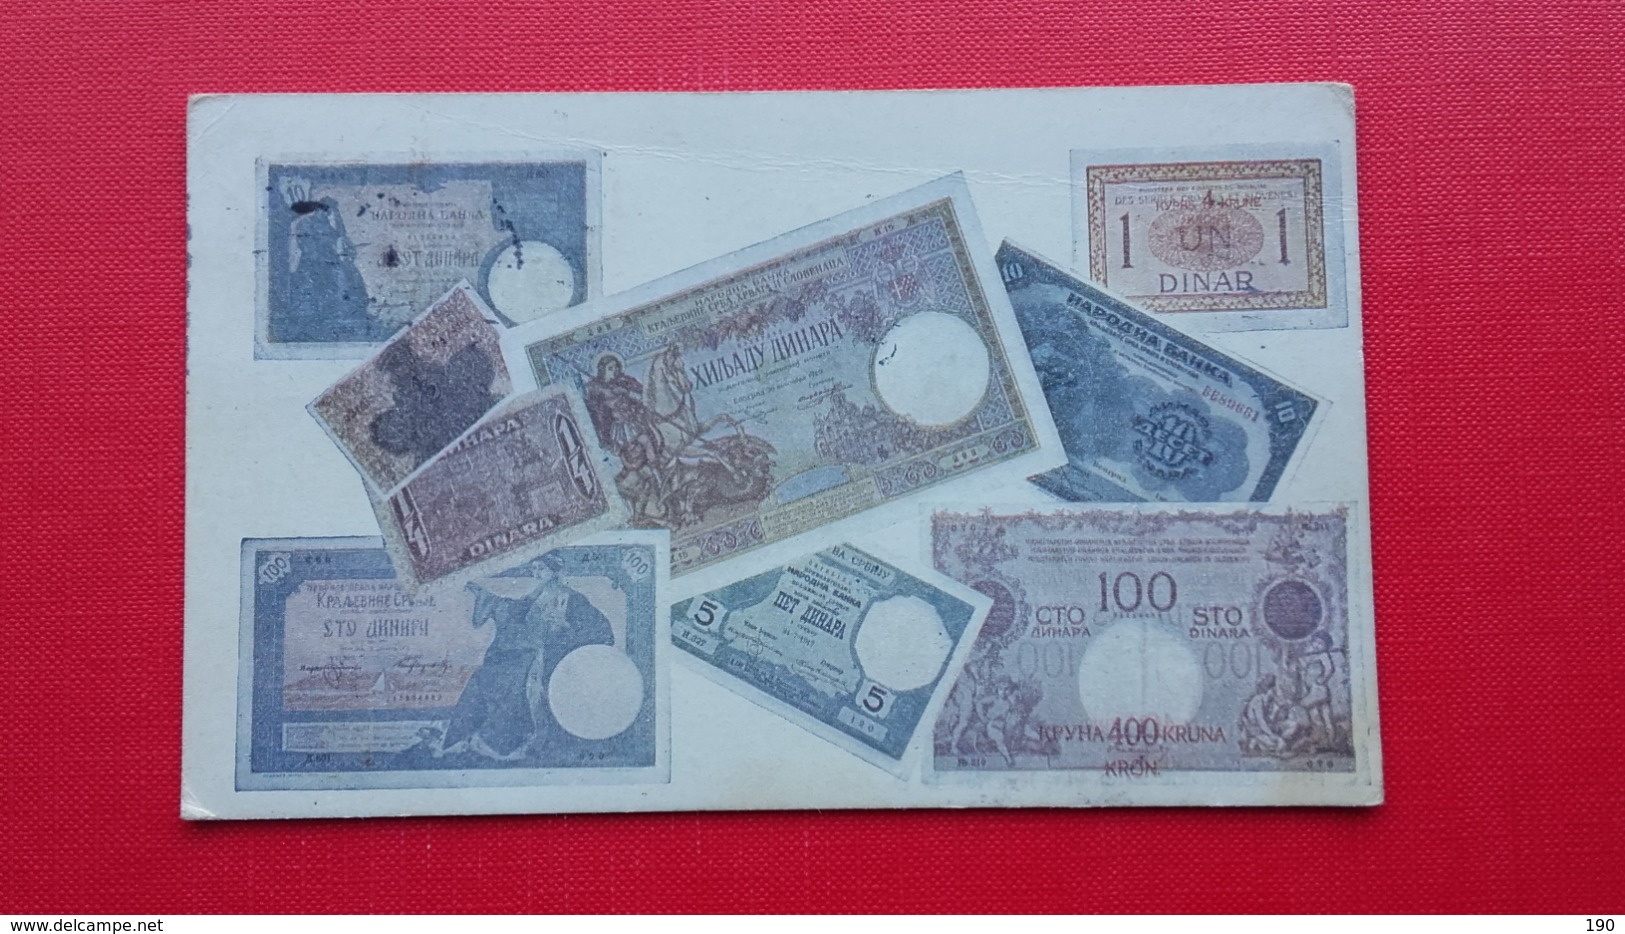 KRALJEVINA JUGOSLAVIJA.Banknotes - Coins (pictures)